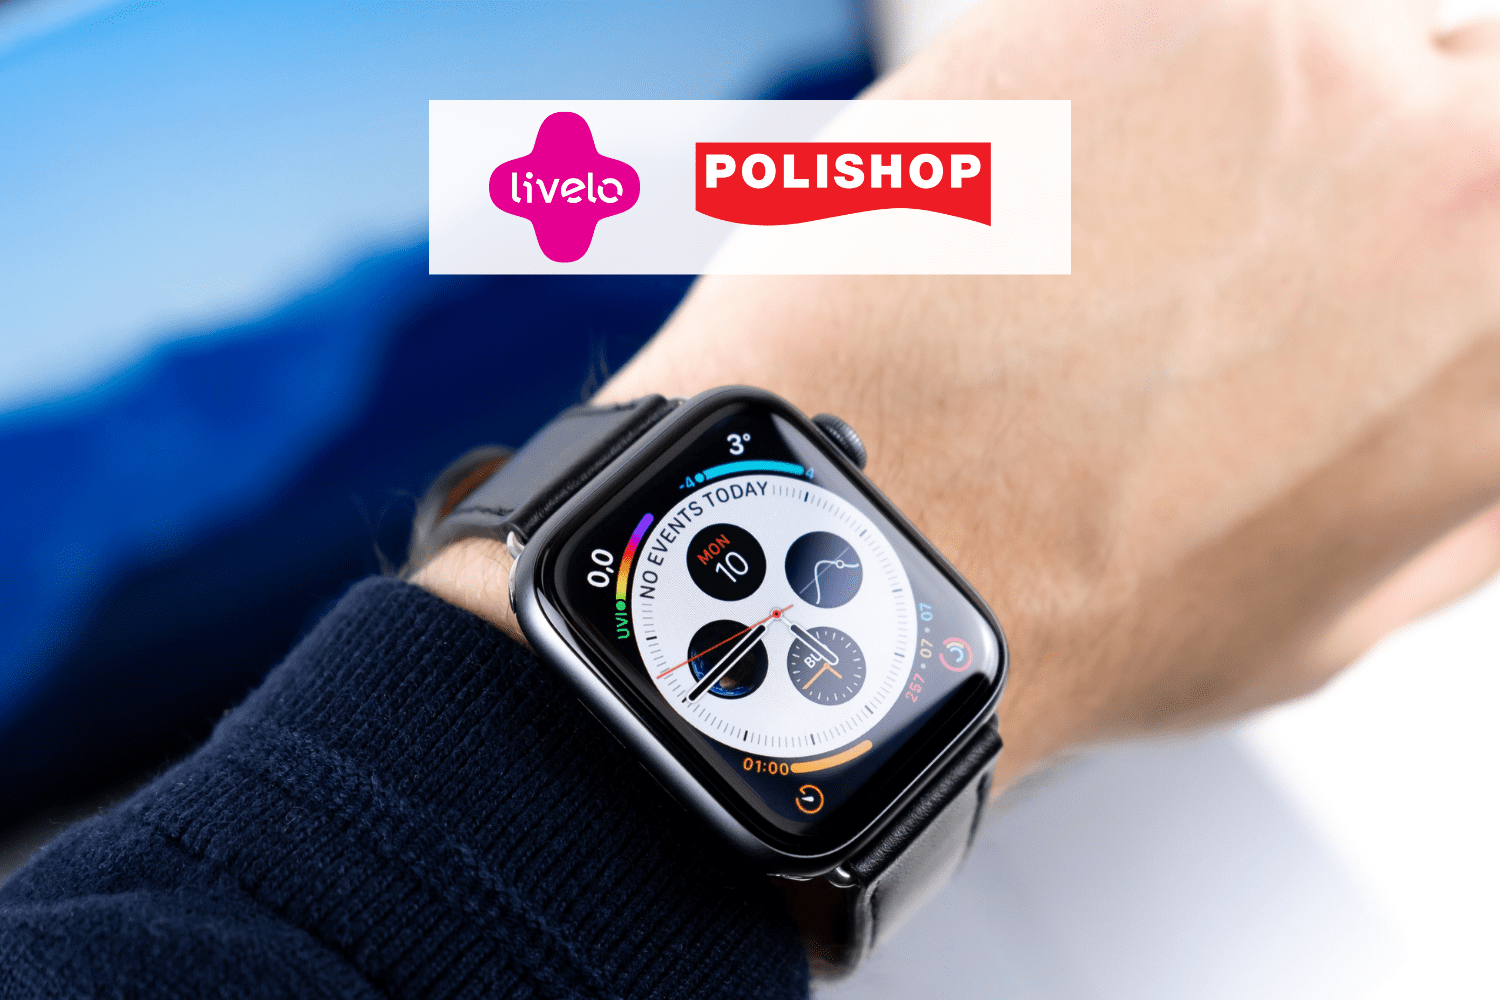 smartwatch com logo Livelo e polishop Até 10 pontos Livelo